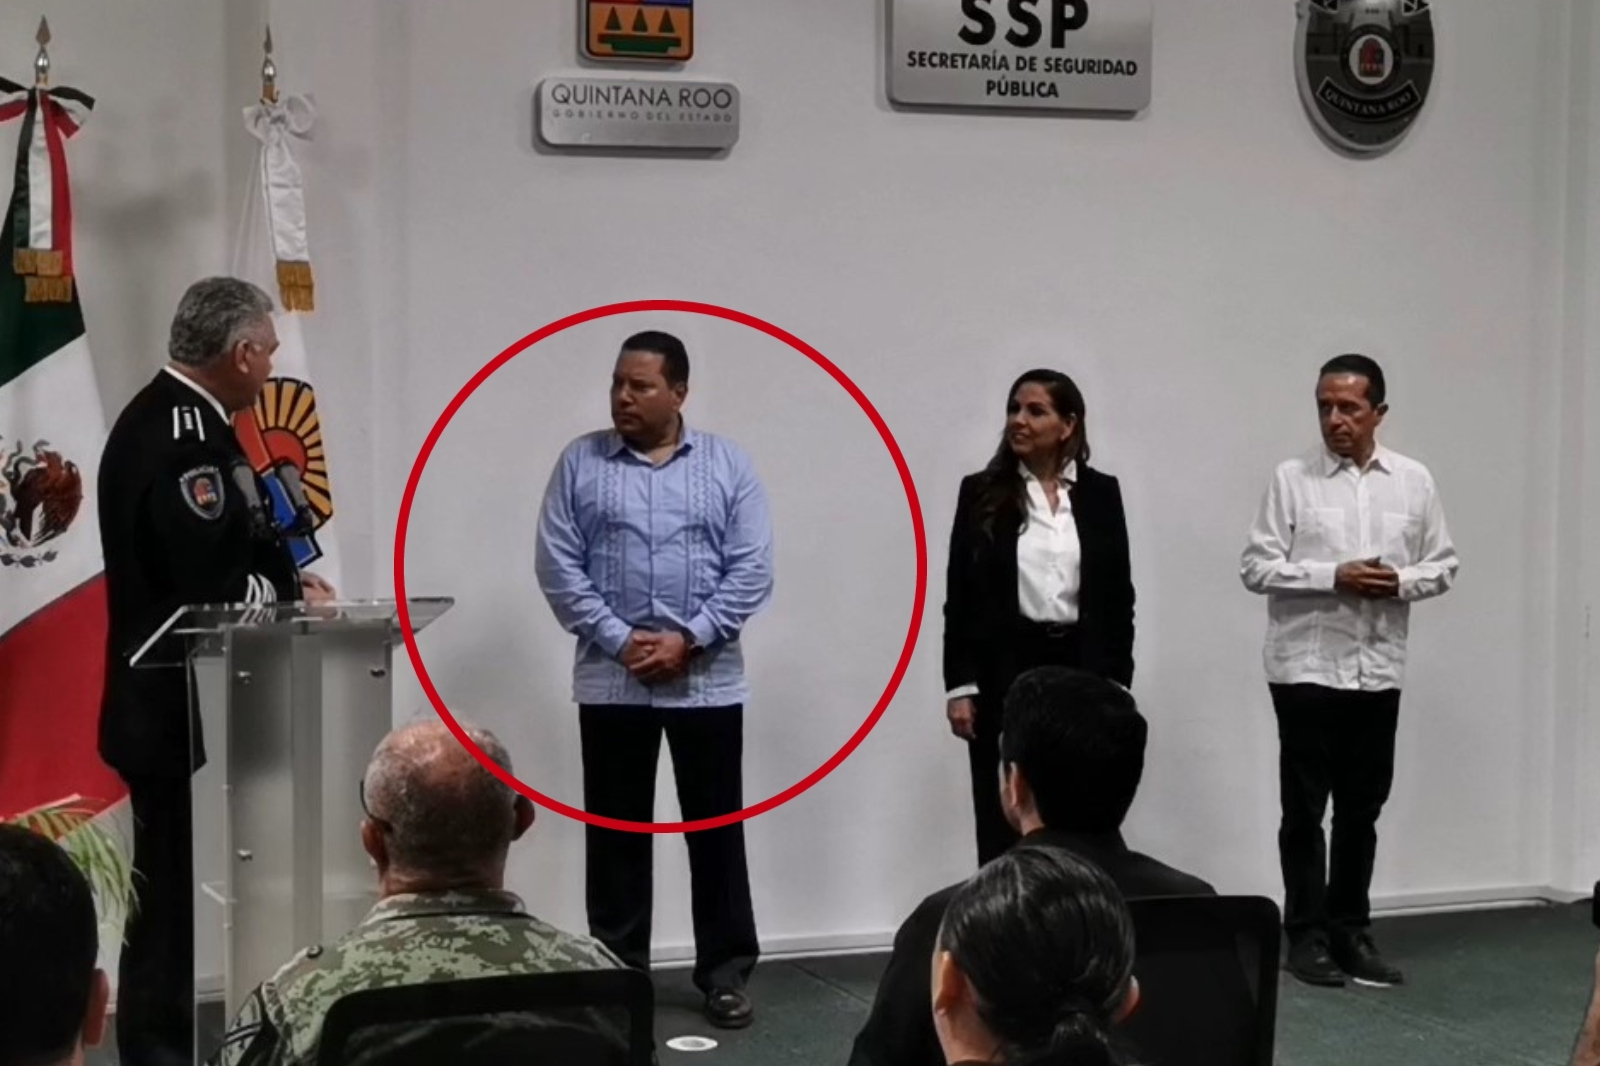 Manelich Castilla Craviotto recibió la placa policial que lo acredita como el nuevo secretario de Seguridad Pública de Quintana Roo